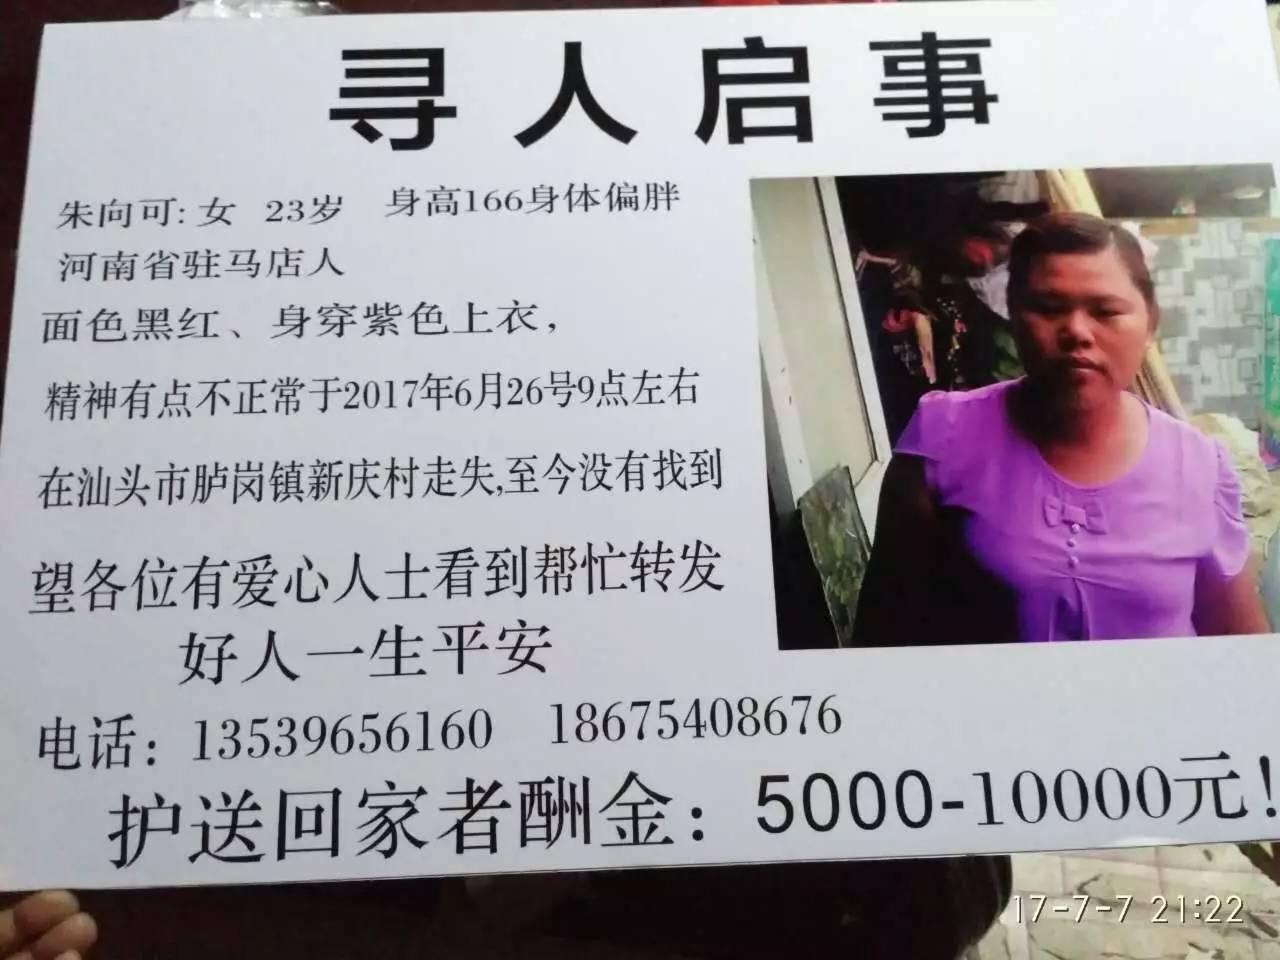 寻人启事:一位23岁女孩昨天在隆江出现过在也没发现她的身影